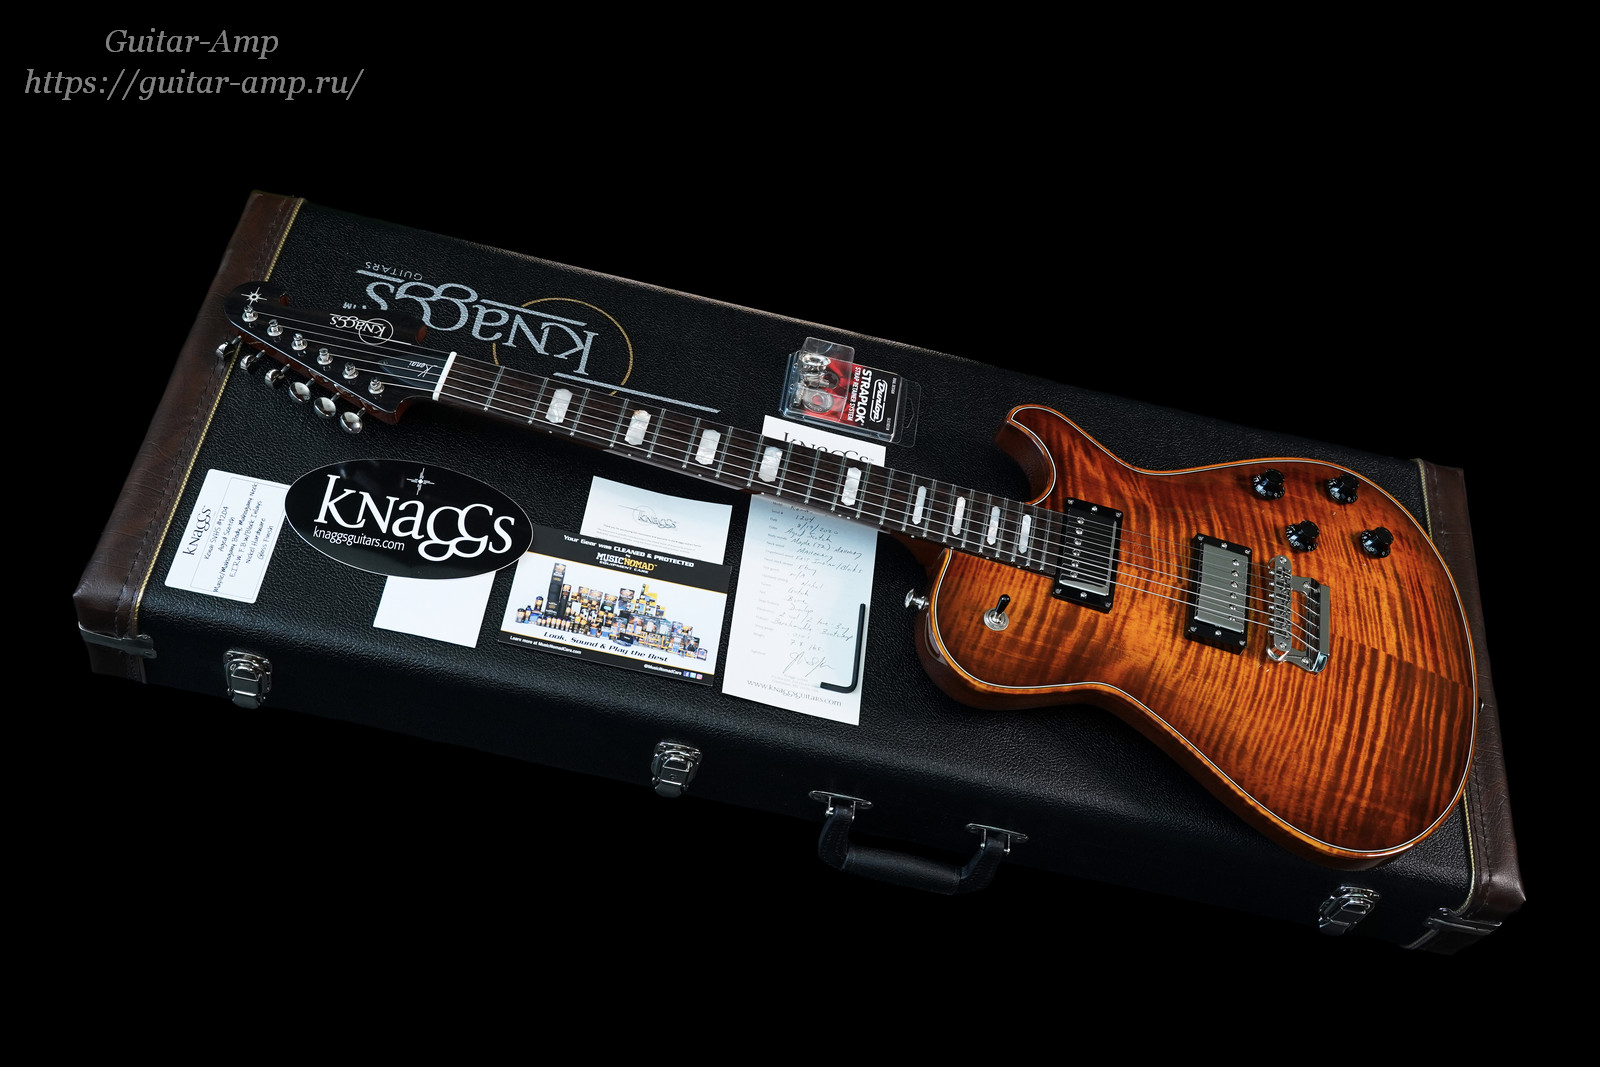 Knaggs Guitars T2 Kenai SVHS in Aged Scotch 2020 01a_x1600.jpg